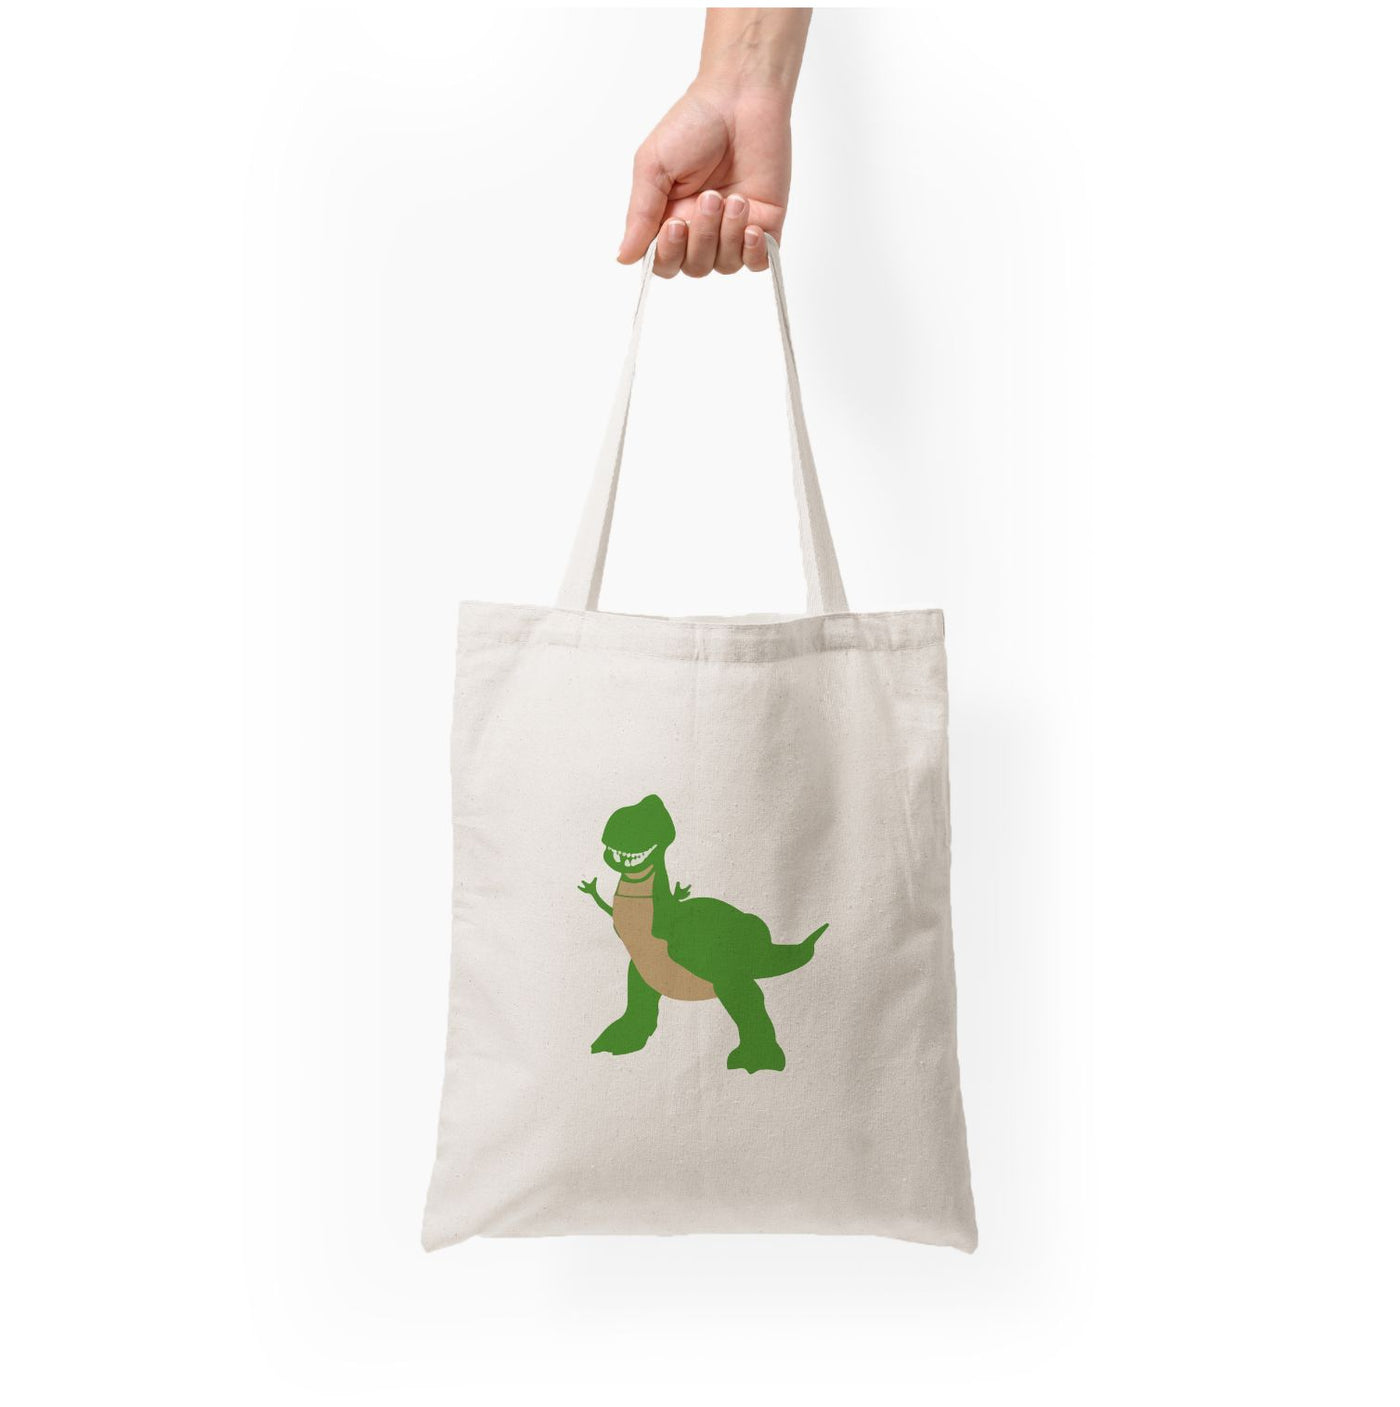 Rex - Disney Tote Bag